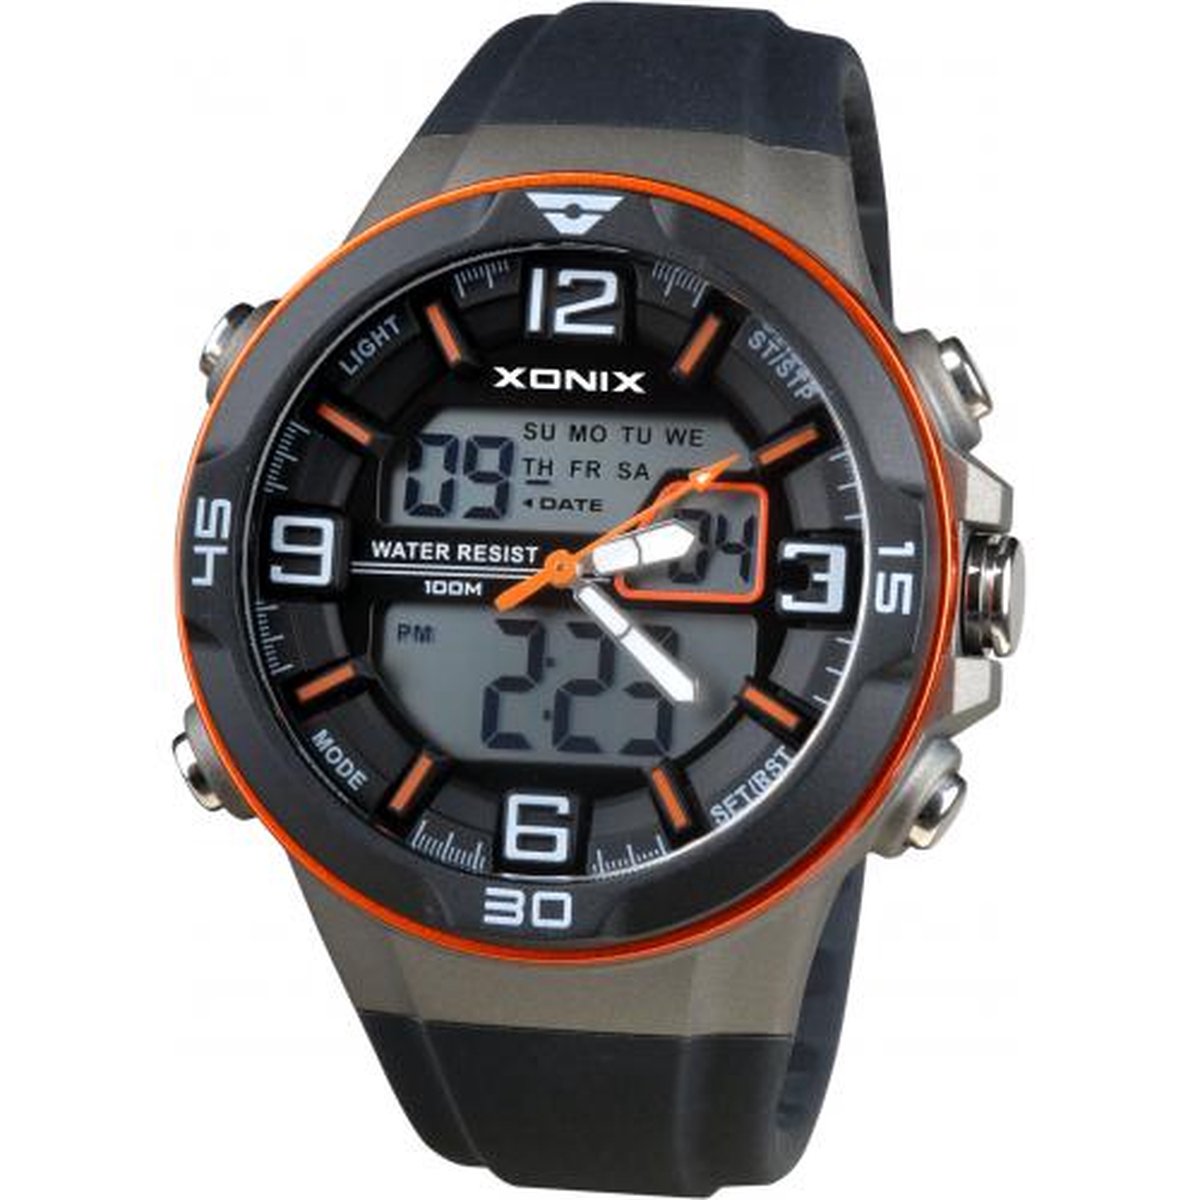 Xonix VL-004 - Horloge - Digitaal - Heren - Mannen - Siliconen band - ABS - Cijfers - Achtergrondverlichting - Alarm - Start-Stop - Chronograaf - Tweede tijdzone - Waterdicht - 10 ATM - Zwart - Grijs - Oranje